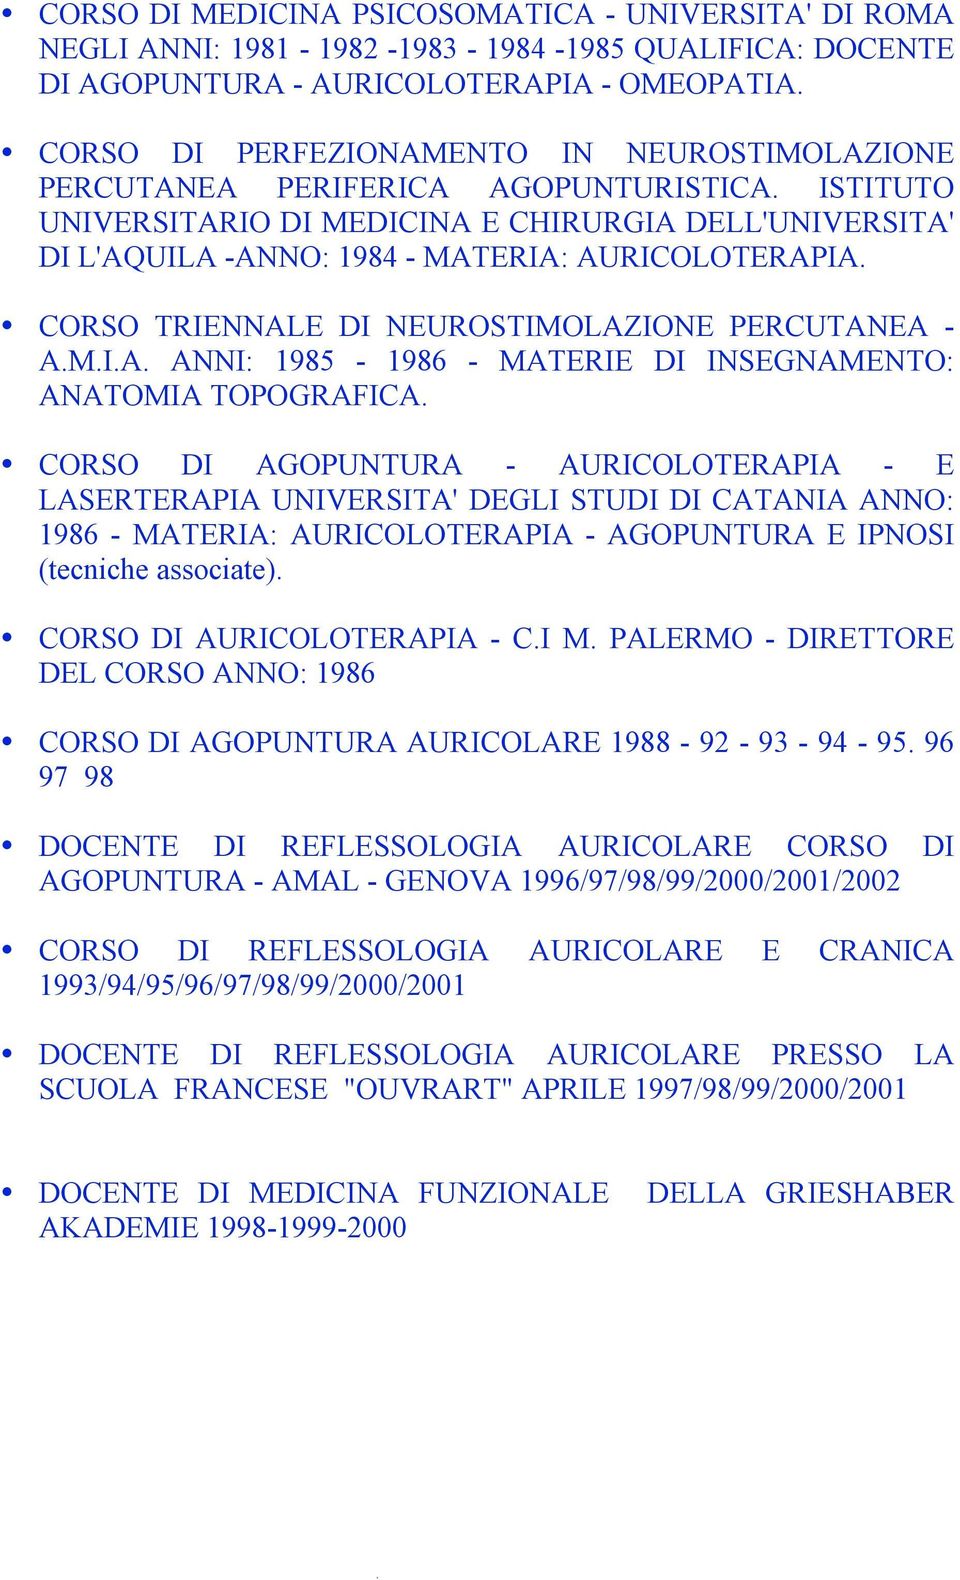 CORSO TRIENNALE DI NEUROSTIMOLAZIONE PERCUTANEA - A.M.I.A. ANNI: 1985-1986 - MATERIE DI INSEGNAMENTO: ANATOMIA TOPOGRAFICA.